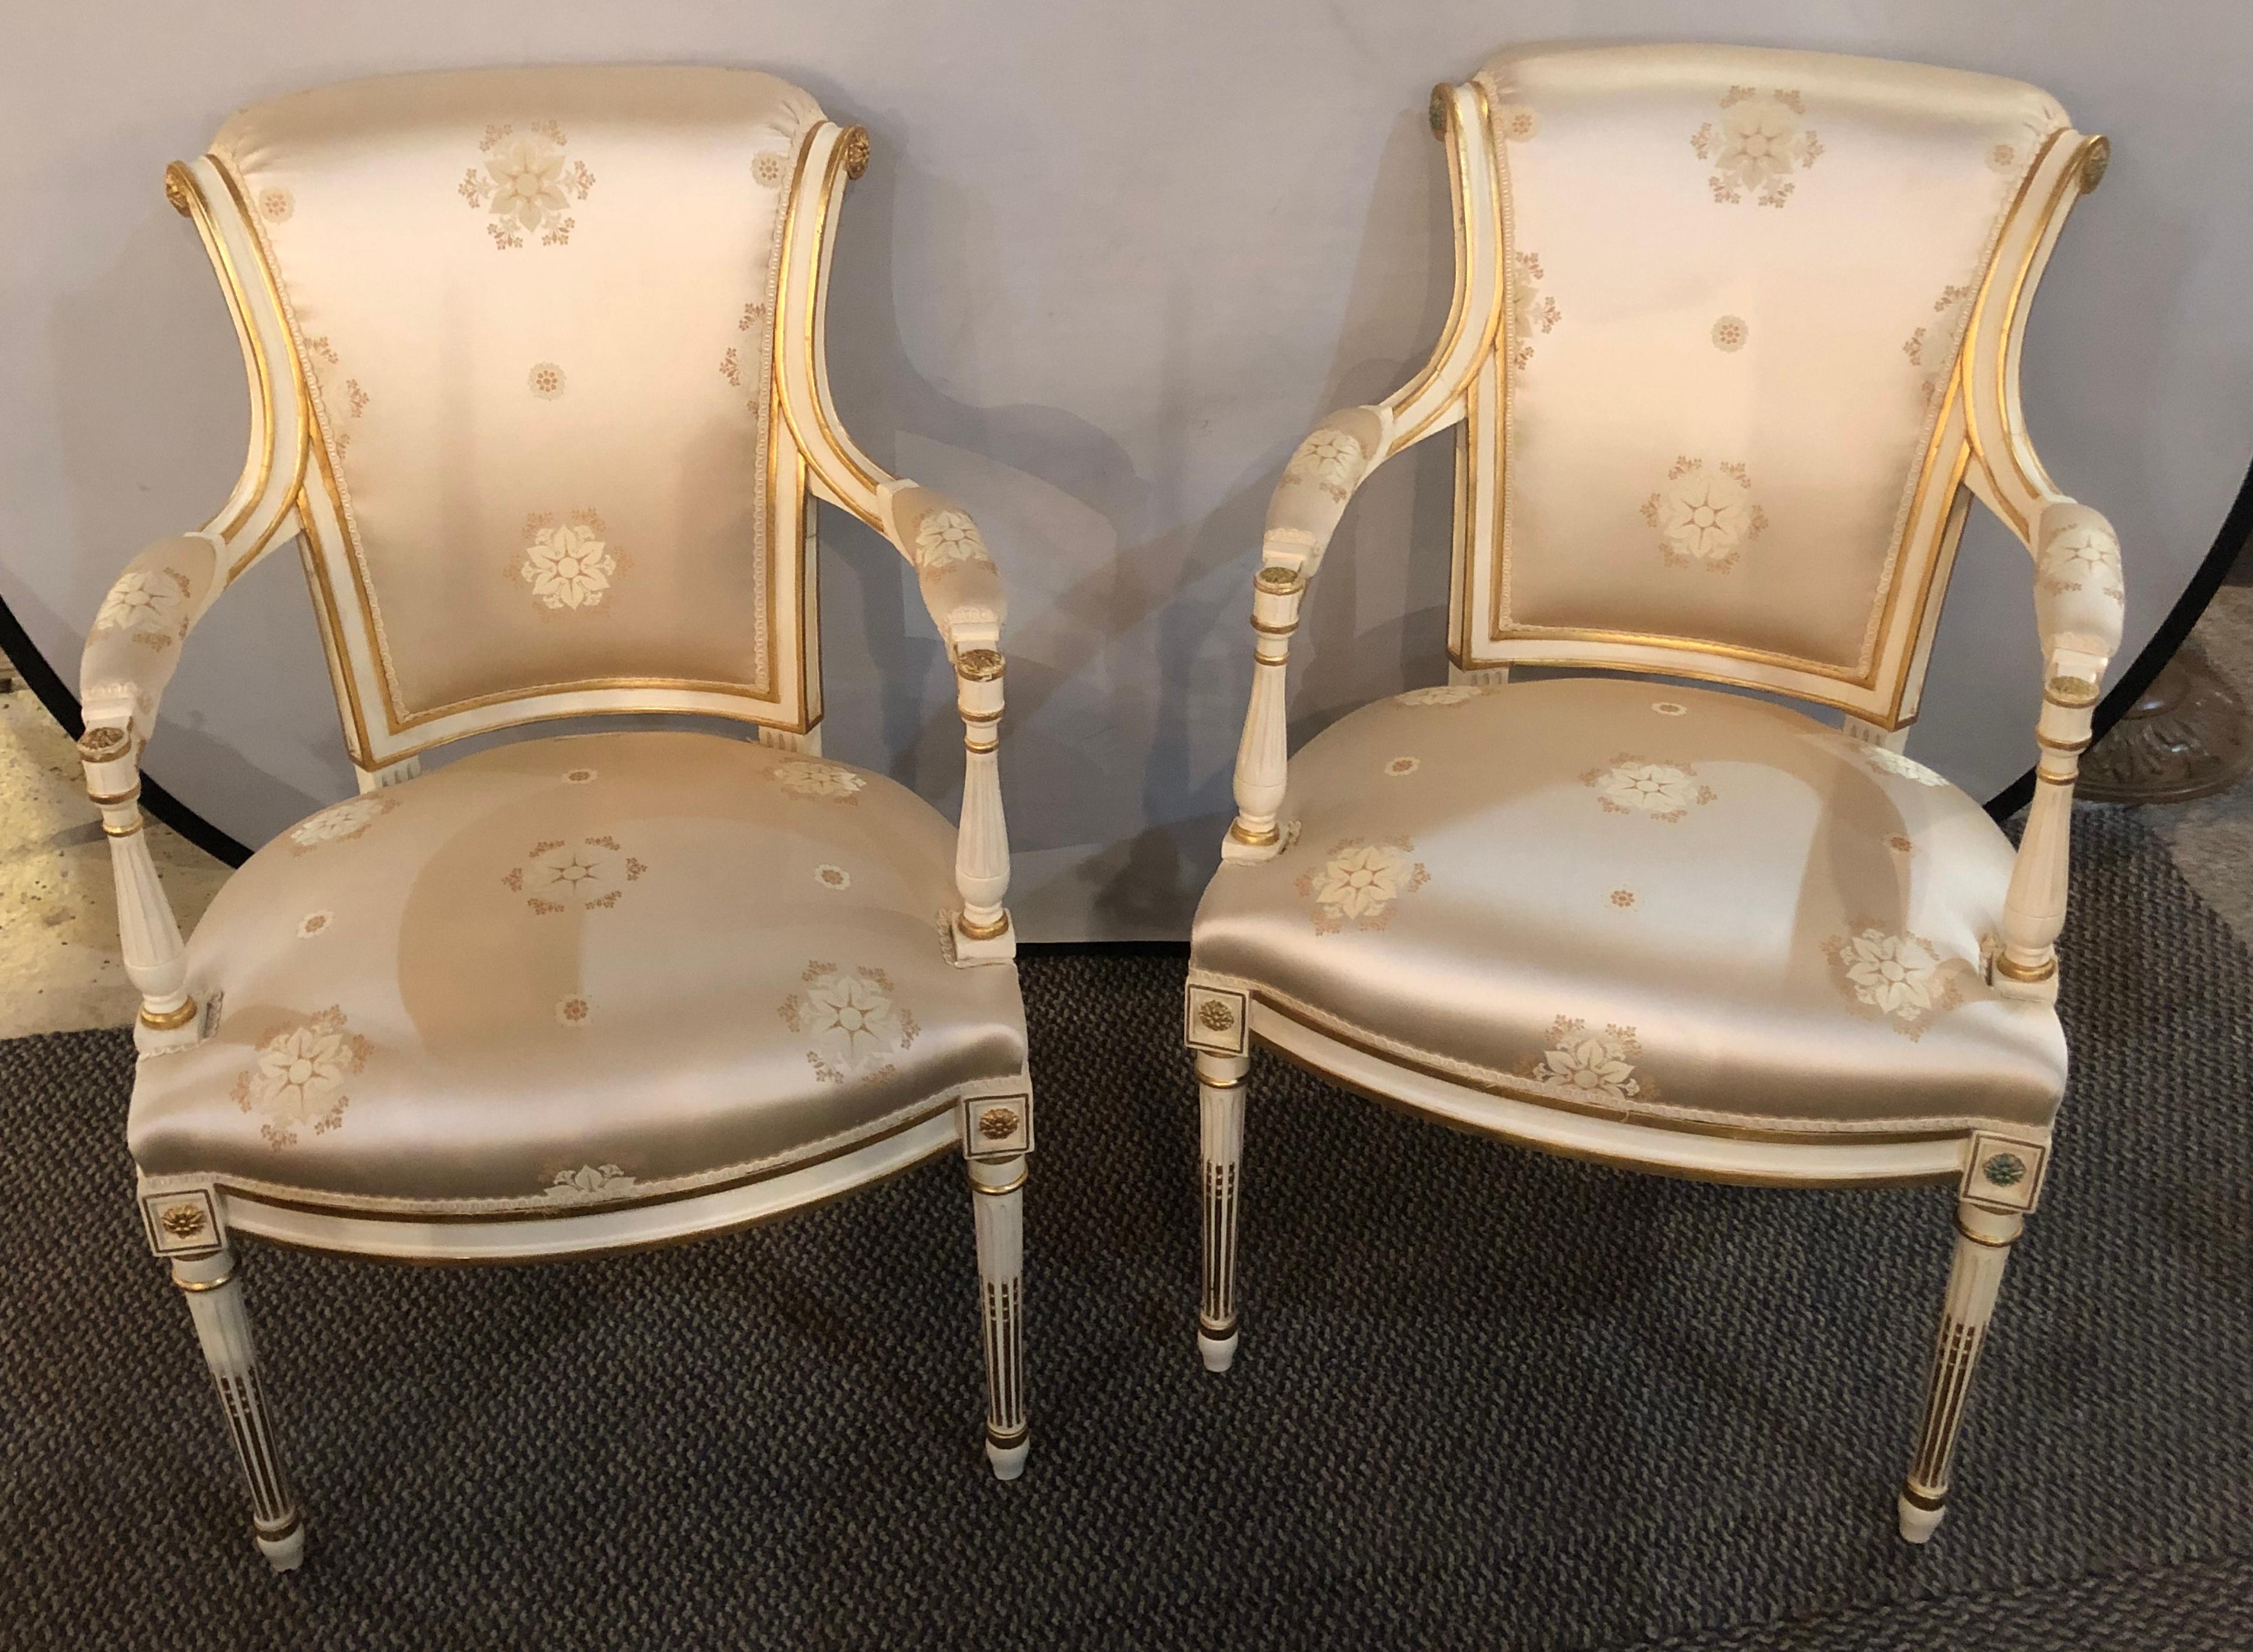 Ein Paar Fauteuils oder Sessel im Louis-XVI-Stil im Hollywood-Regency-Stil mit einer atemberaubenden Polsterung aus Scalamandre-Seide. Ich habe vier Paar dieser wundervoll dekorativen und gepolsterten Sessel zur Verfügung. Jedes ist in einem